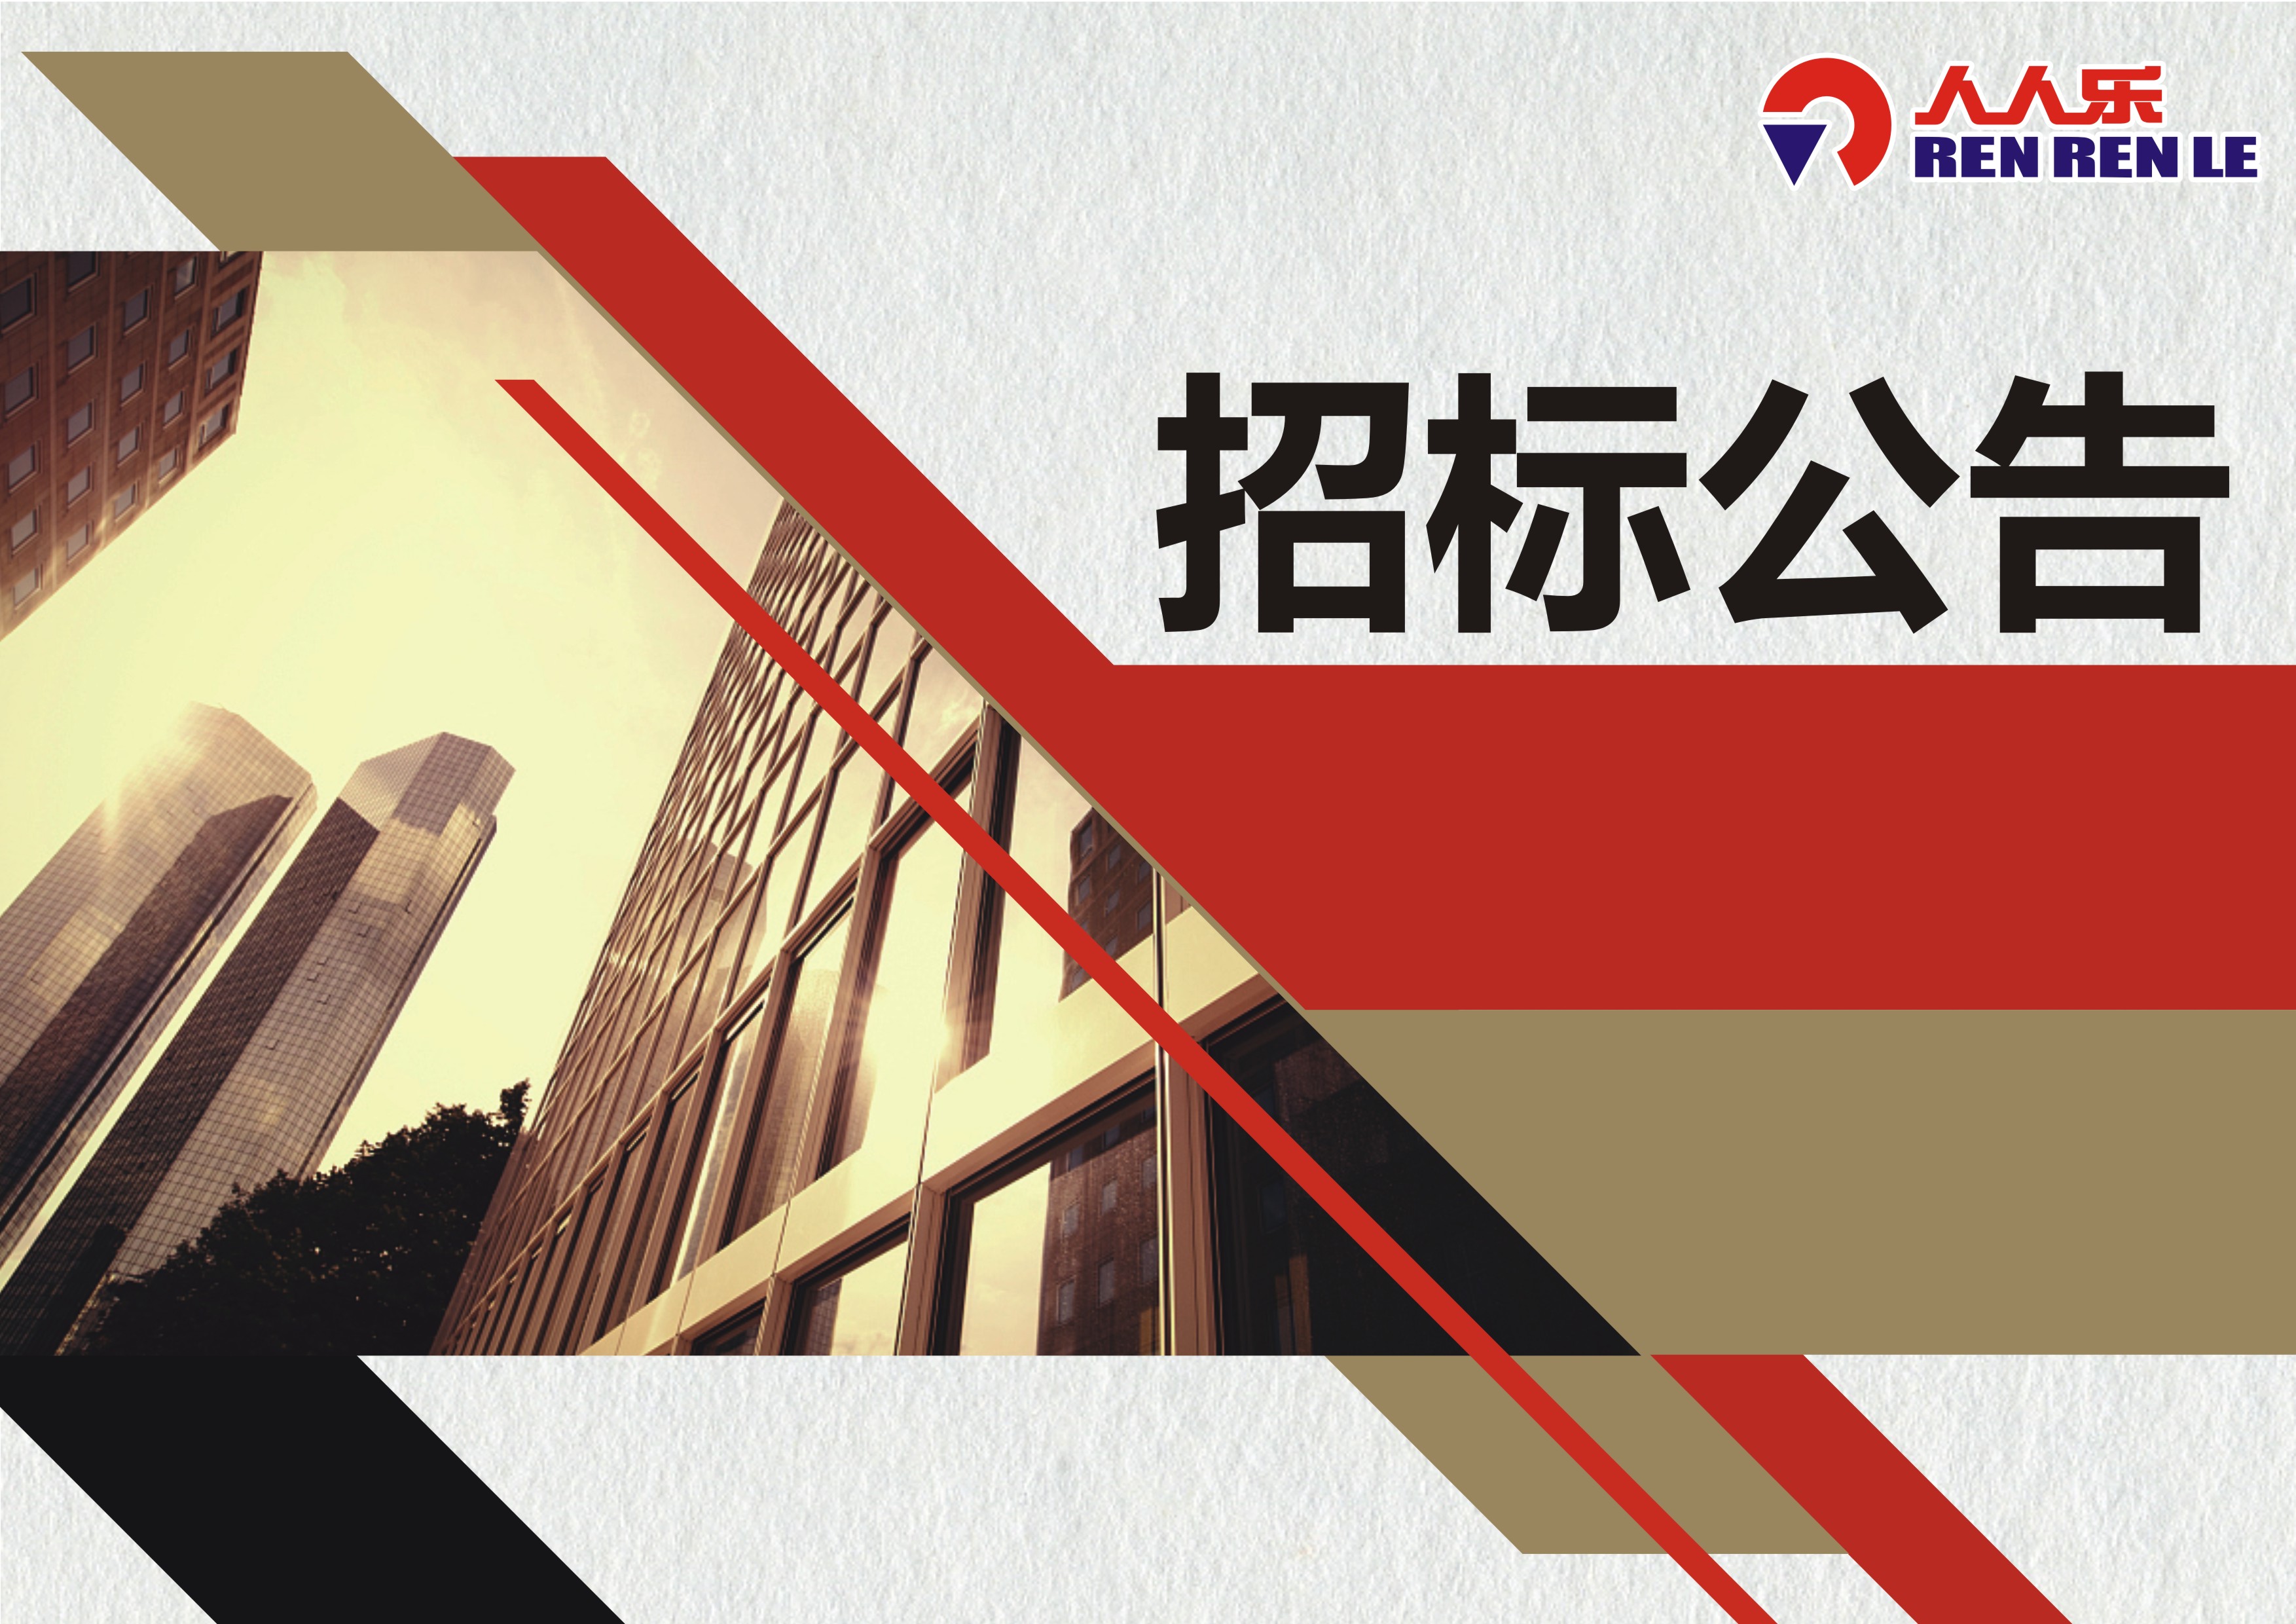 人人乐连锁商业集团股份有限公司重庆区电梯设备年度维护保养招标书